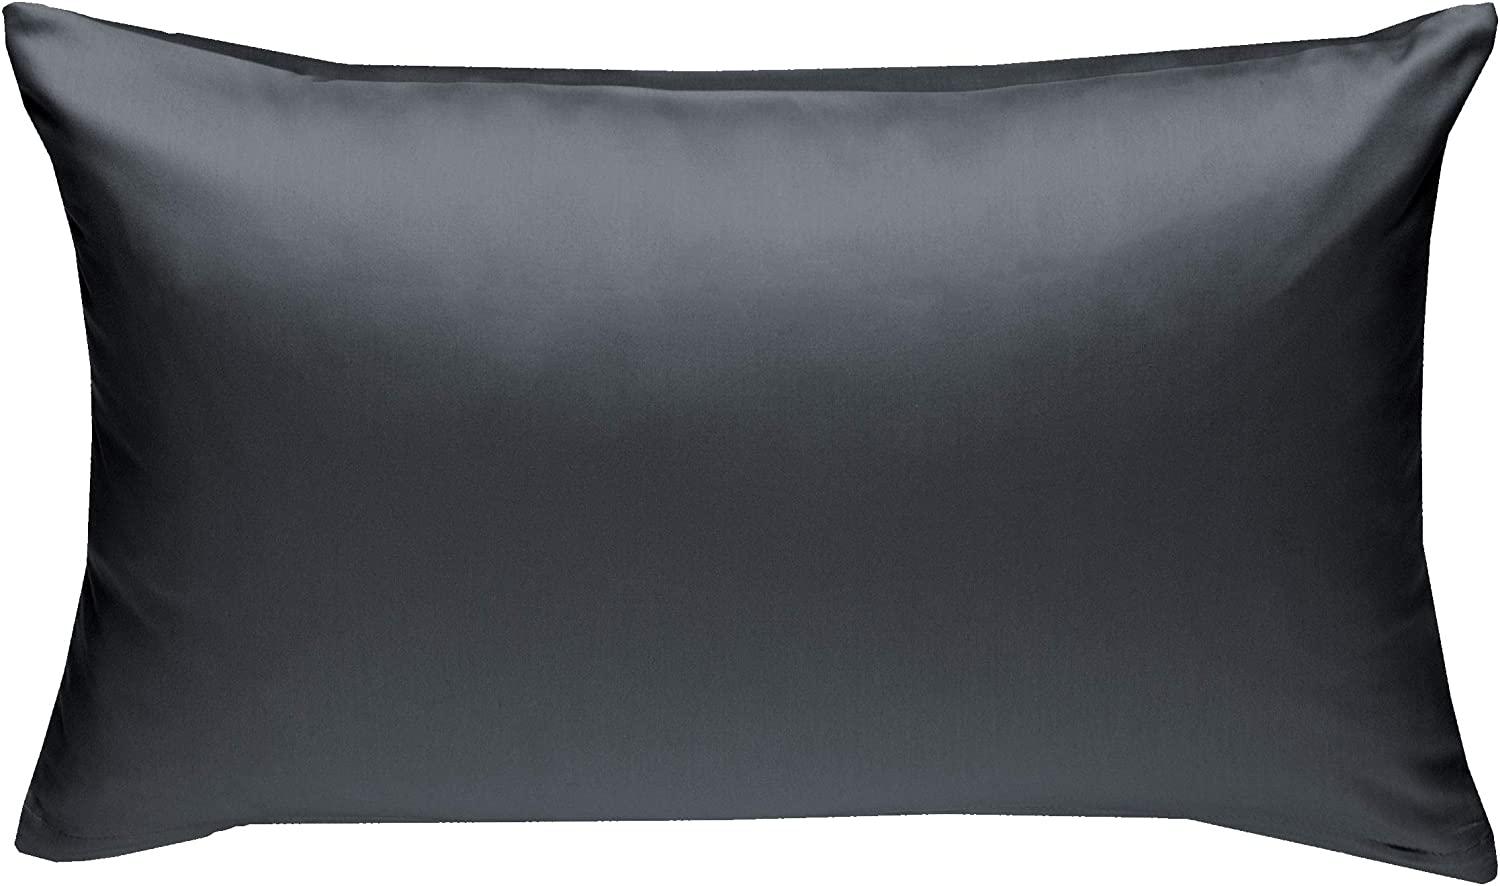 Bettwaesche-mit-Stil Mako-Satin / Baumwollsatin Bettwäsche uni / einfarbig anthrazit Kissenbezug 60x80 cm Bild 1